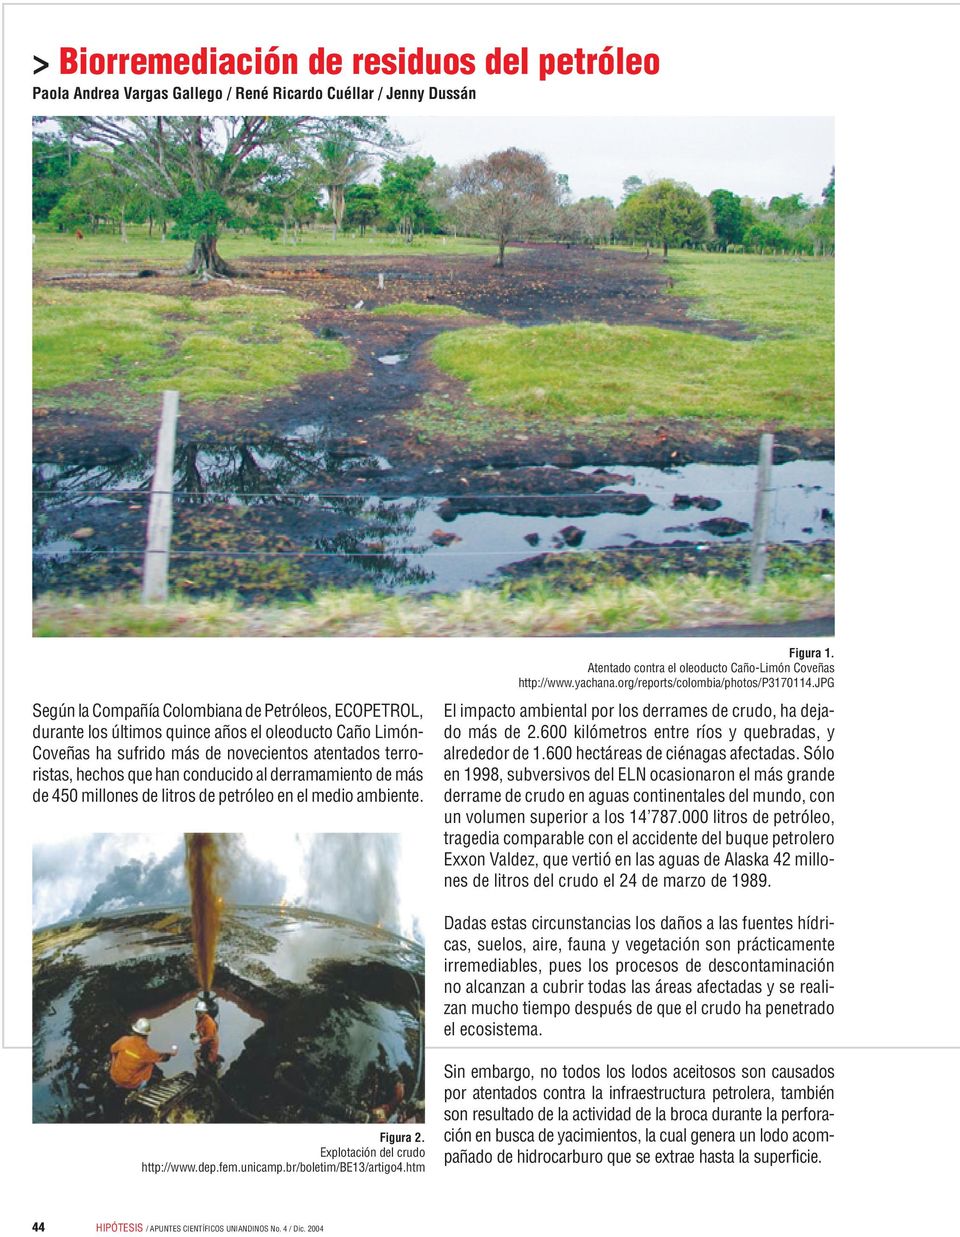 jpg Según la Compañía Colombiana de Petróleos, ECOPETROL, durante los últimos quince años el oleoducto Caño LimónCoveñas ha sufrido más de novecientos atentados terroristas, hechos que han conducido